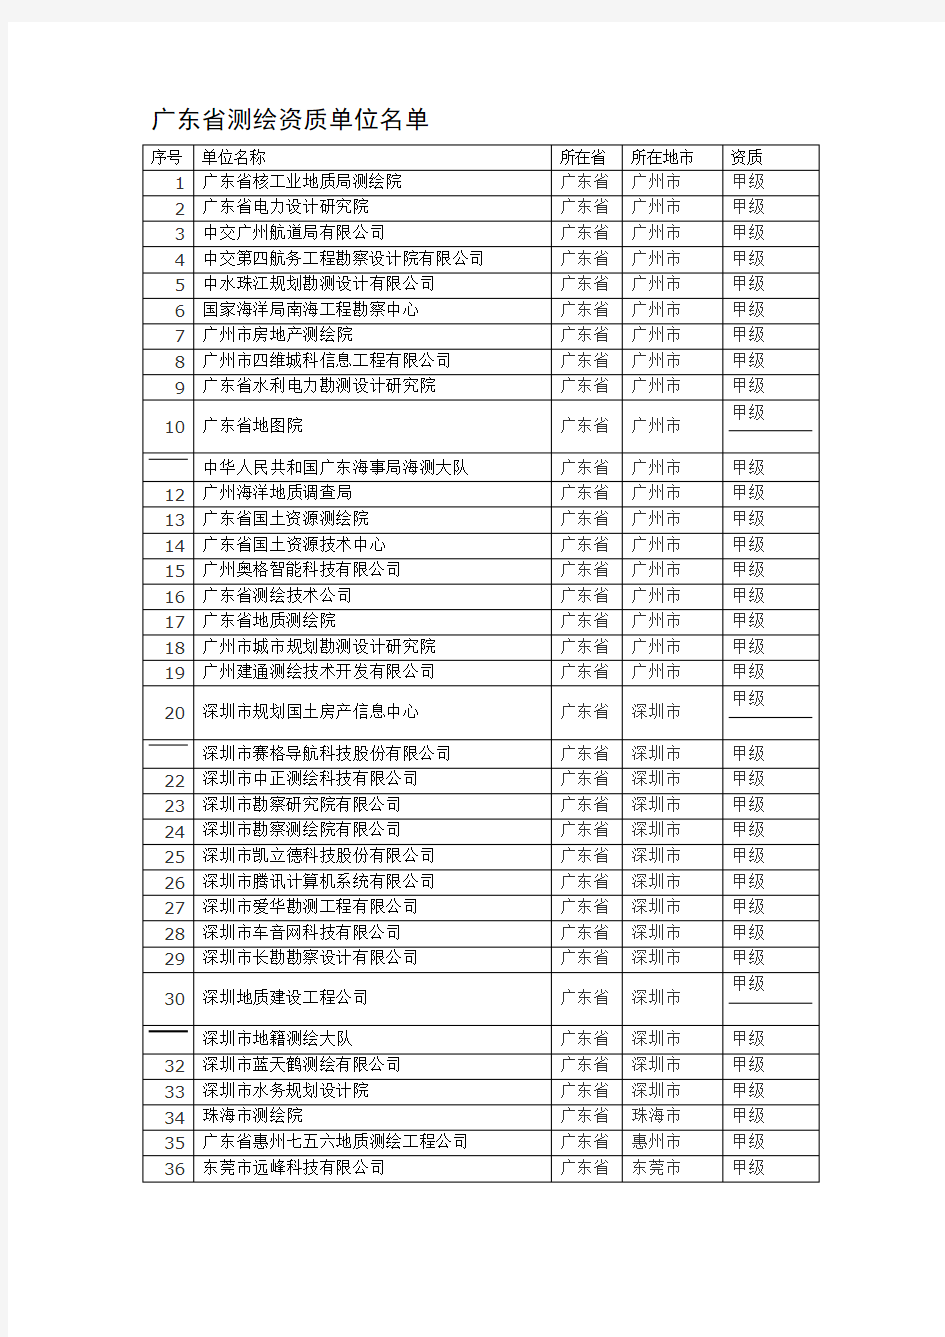 广东省测绘资质单位名单(甲)